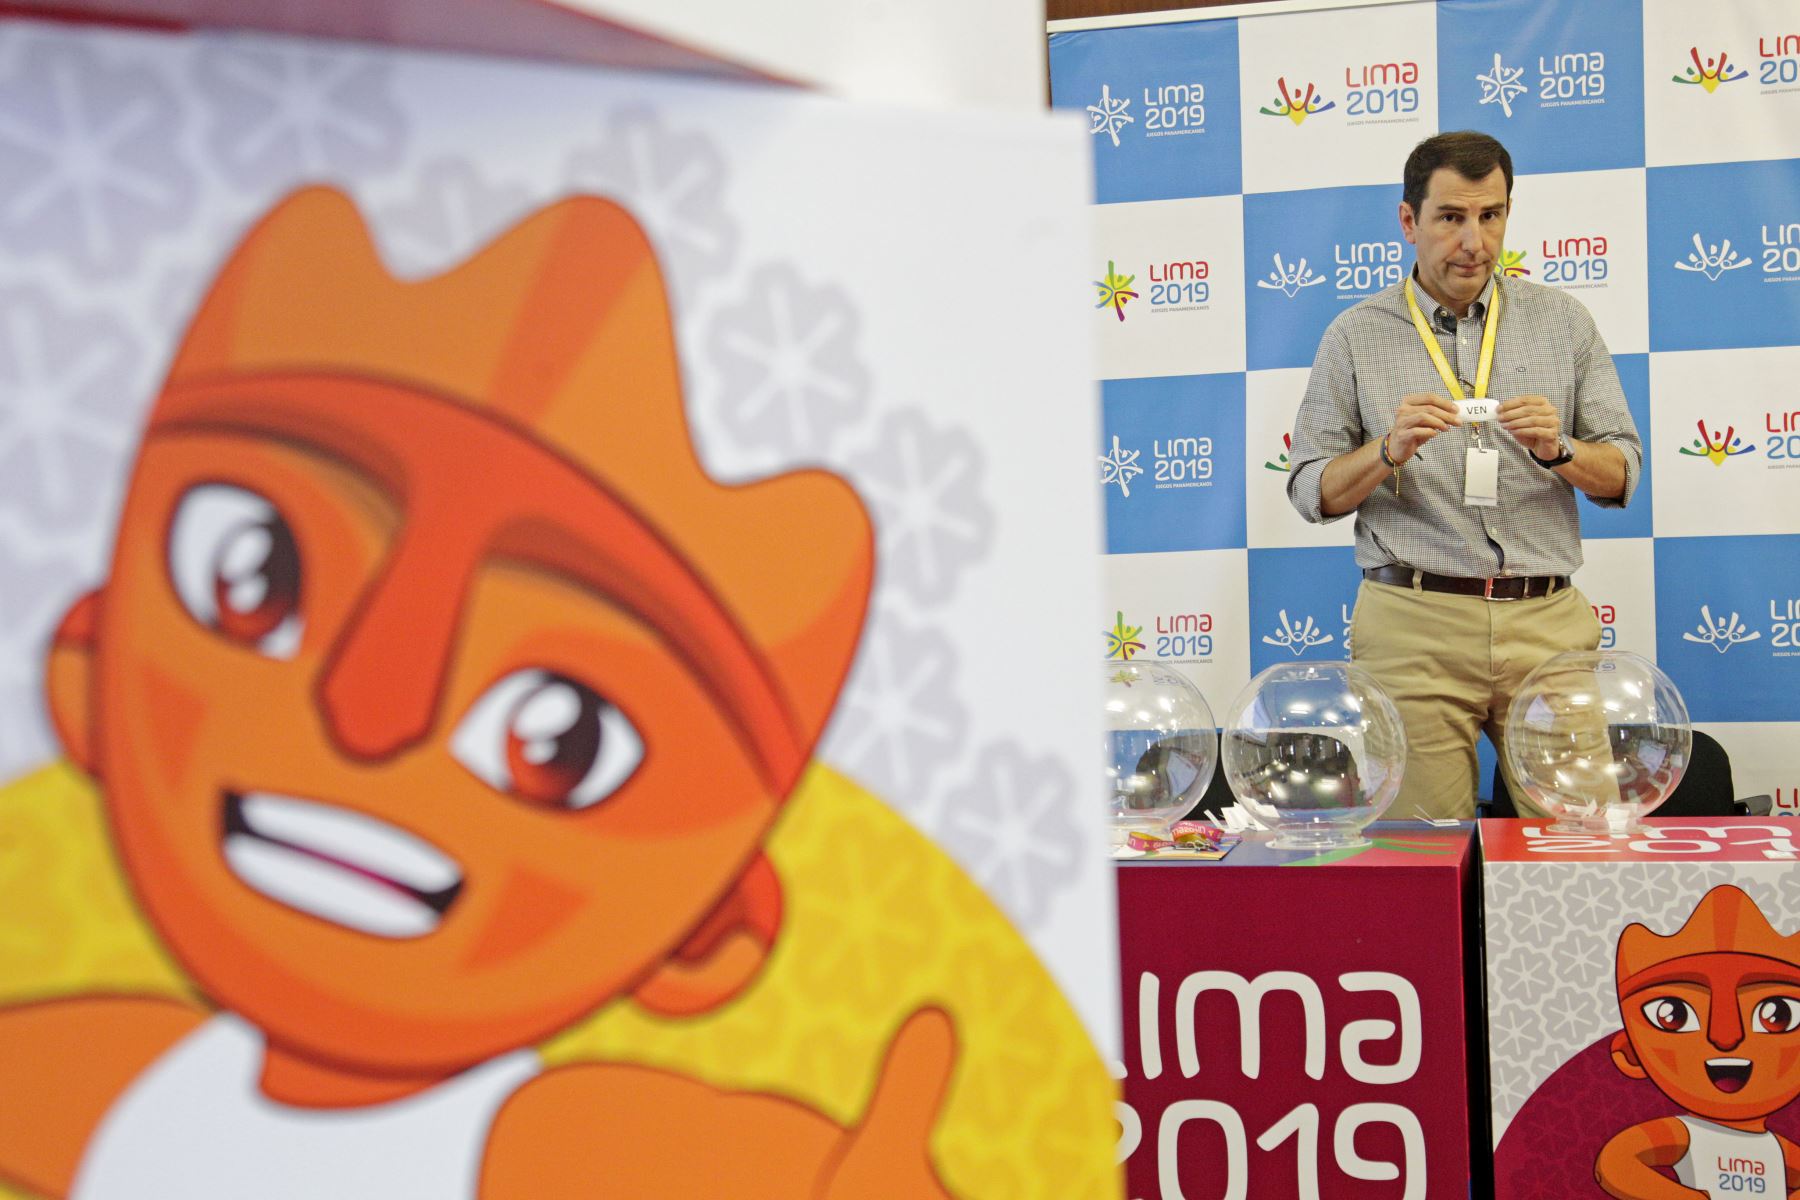 Veintidós países buscarán medallas de oro en competiciones de gimnasia en Lima 2019.